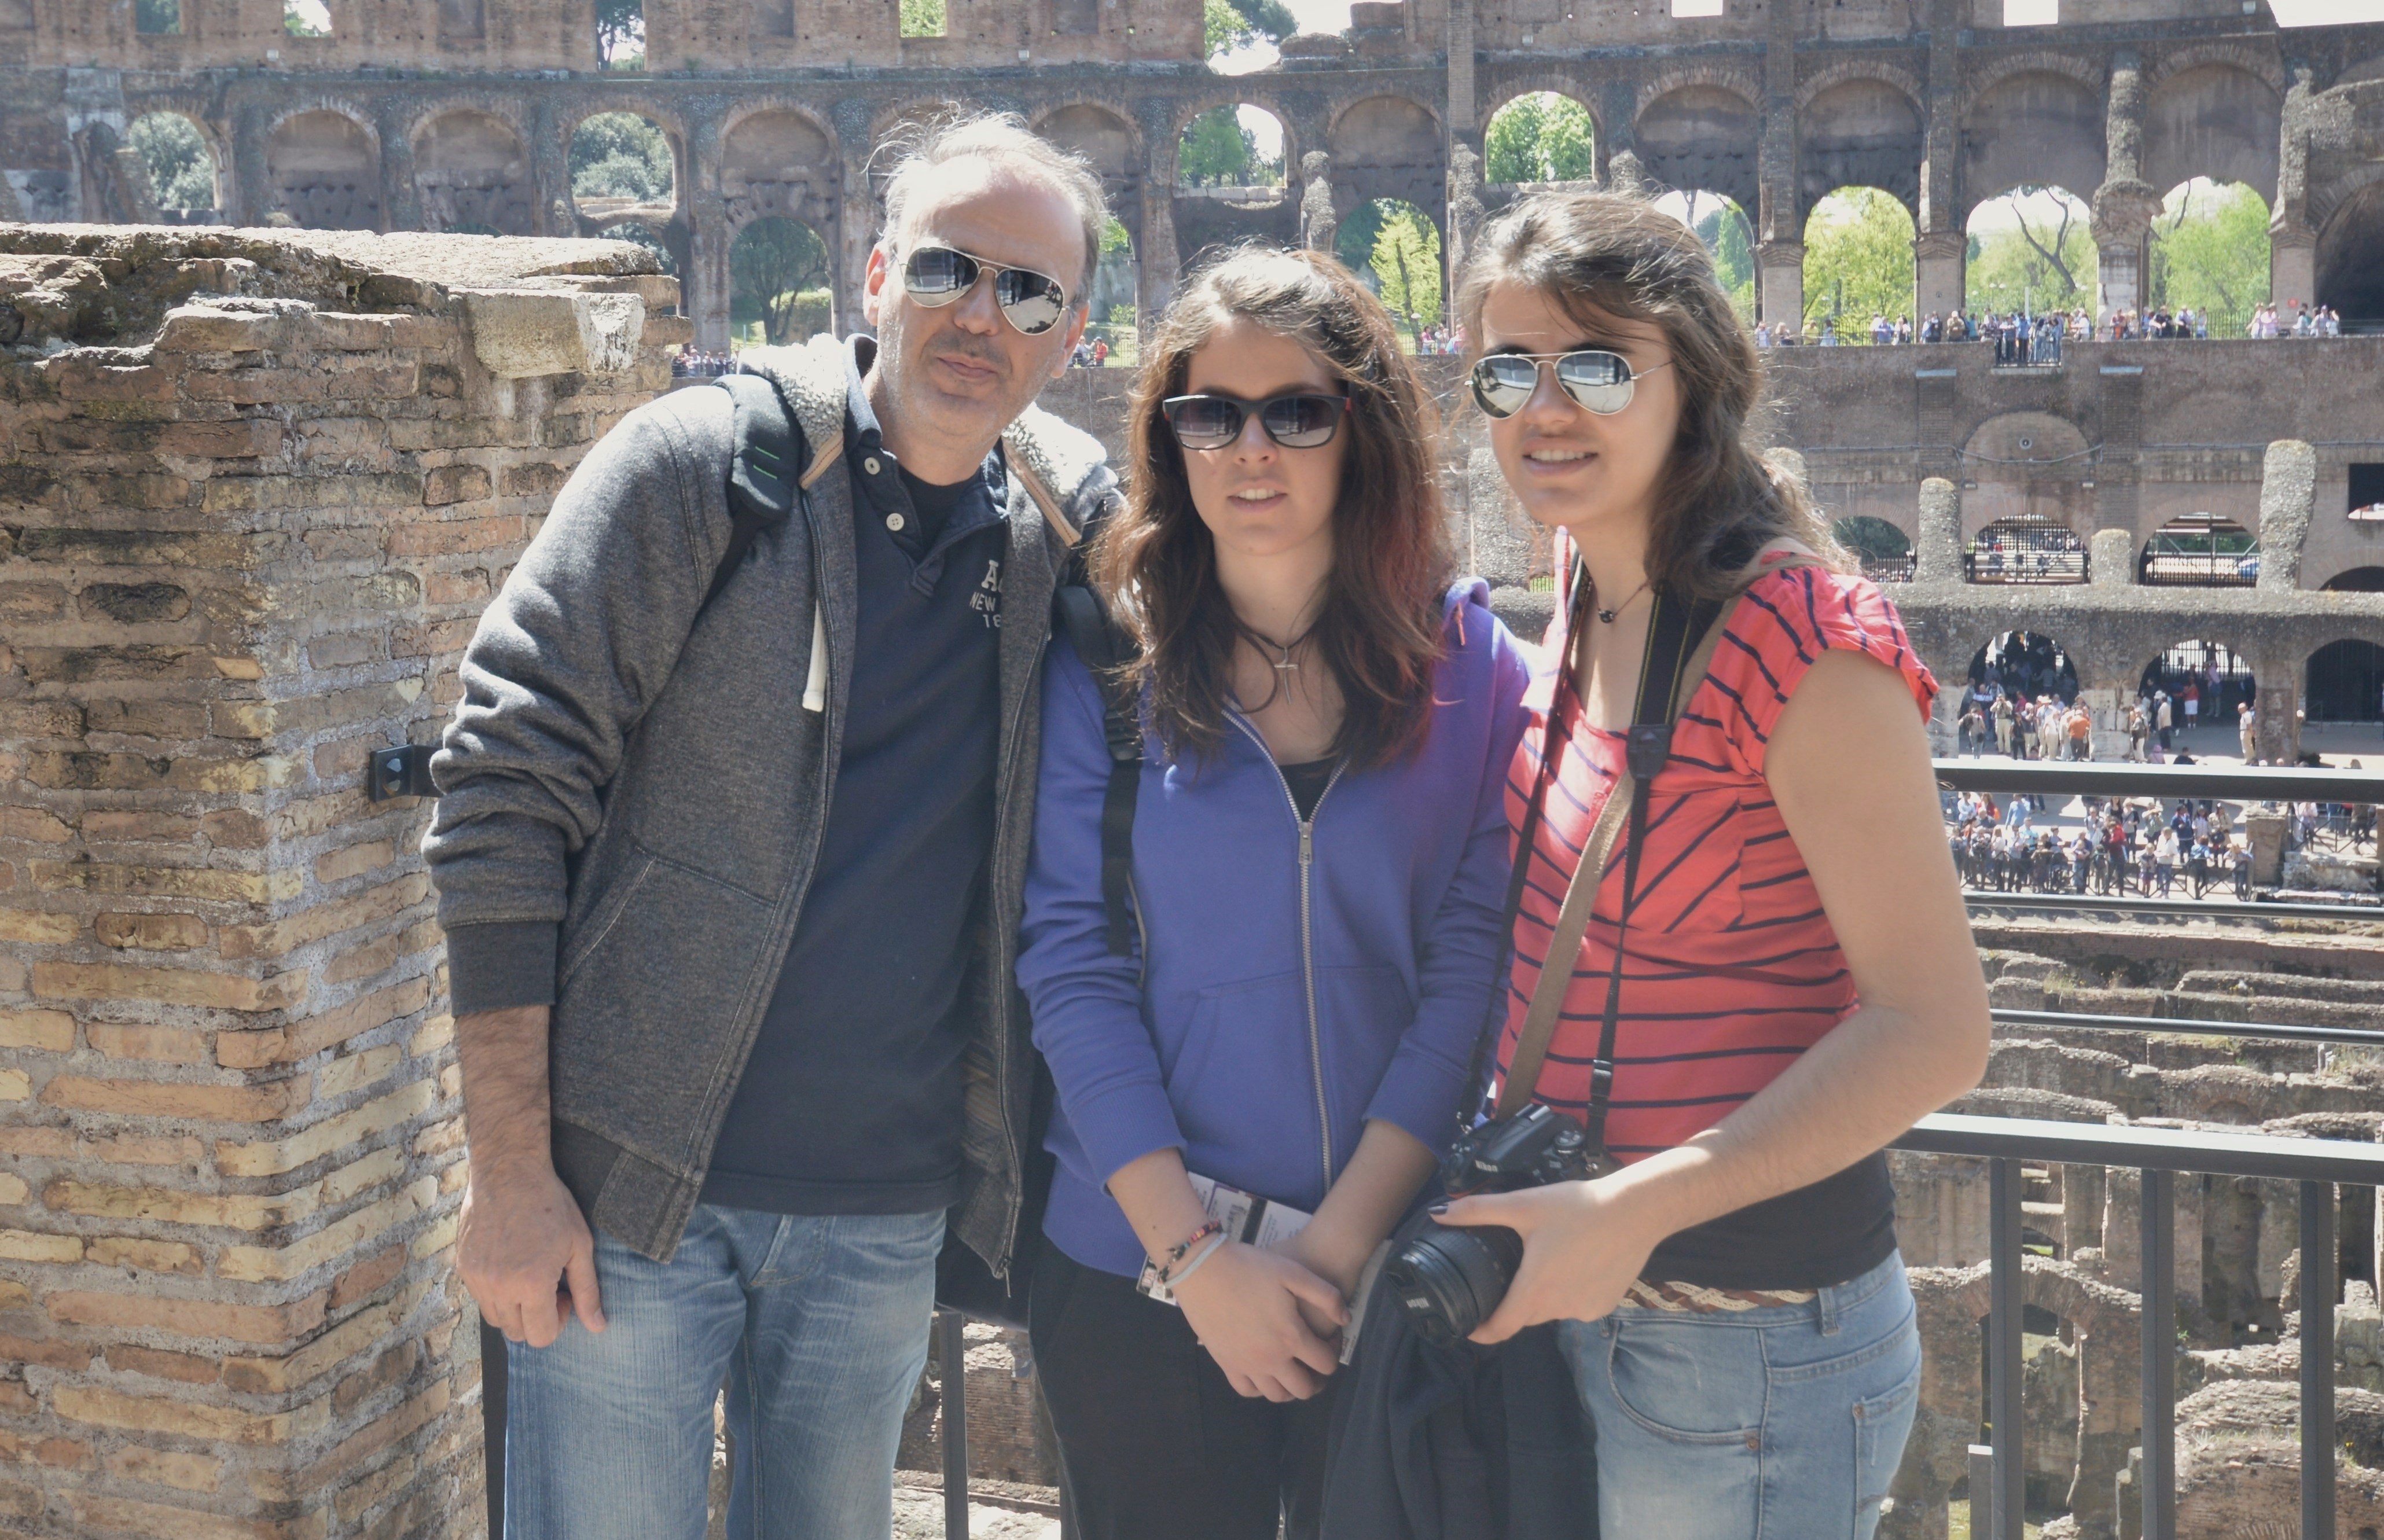 Annie, Danai and me at Rome.